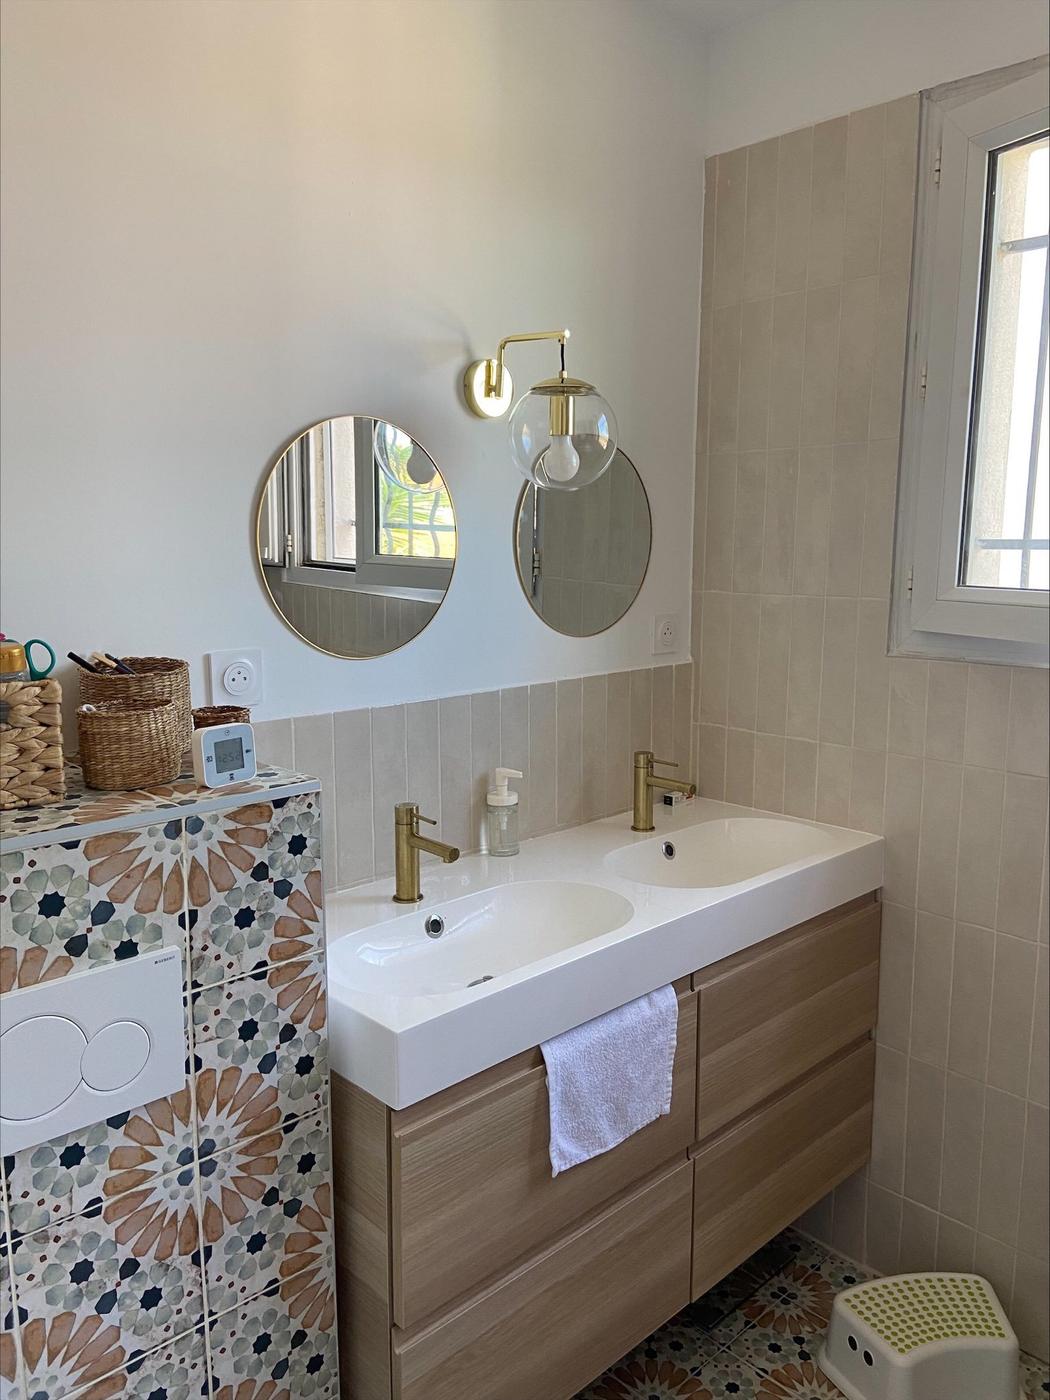 Carreau de ciment terracotta avec motifs floraux 20x20 cm dans une salle de bain beige miroirs ronds luminaire doré meuble bois clair